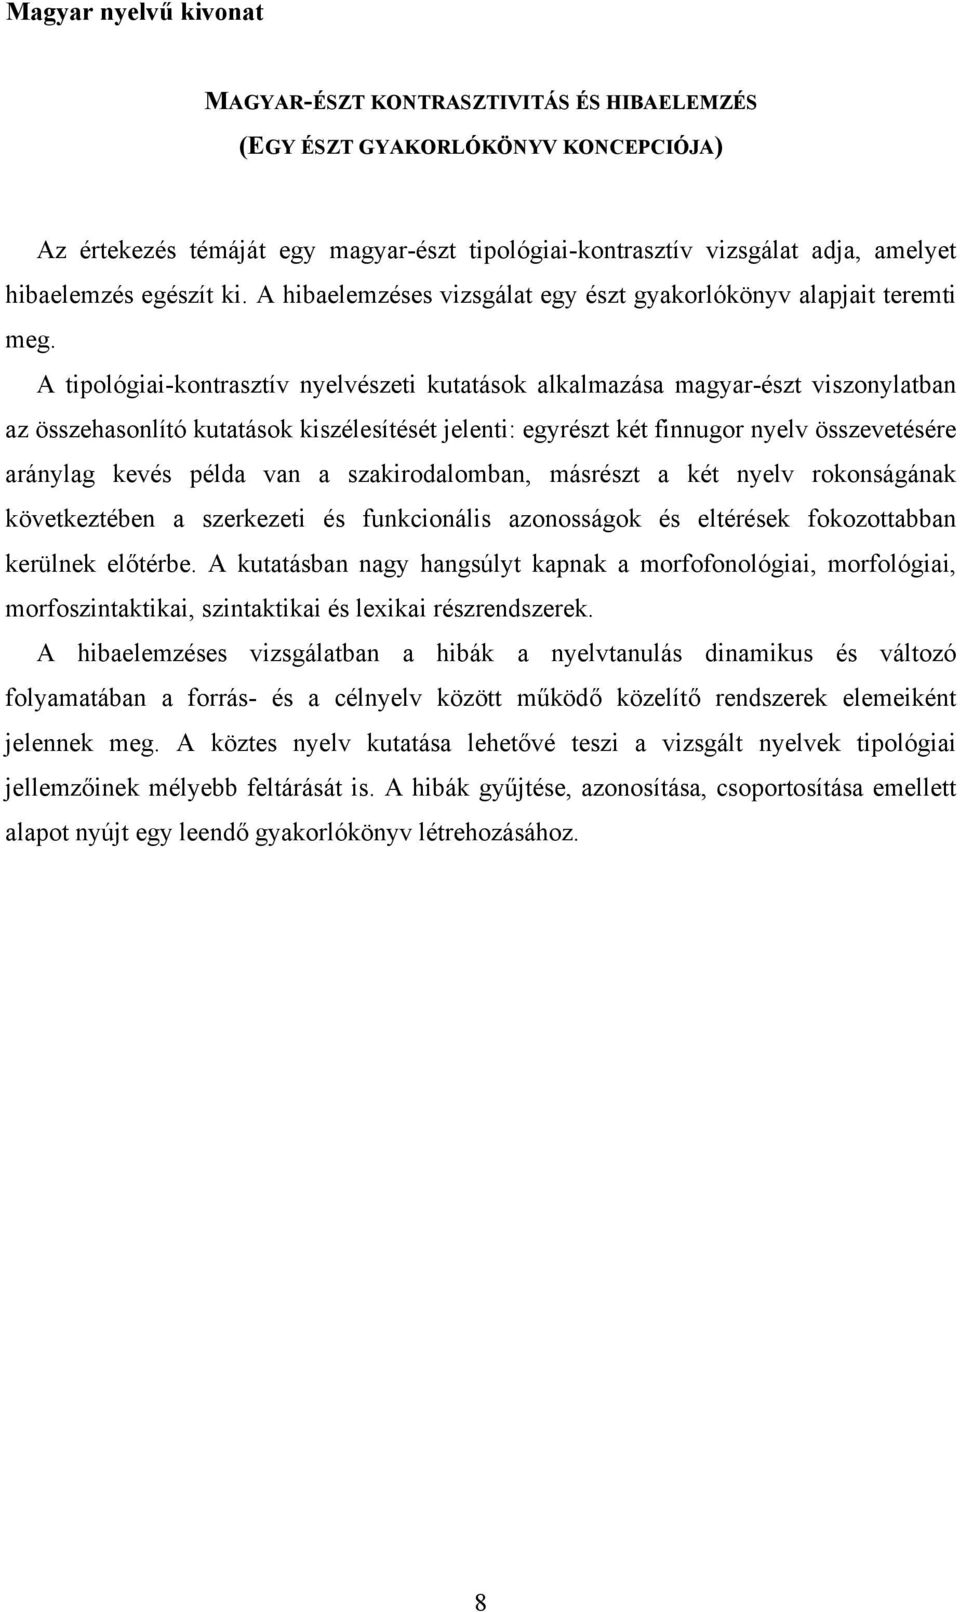 A tipológiai-kontrasztív nyelvészeti kutatások alkalmazása magyar-észt viszonylatban az összehasonlító kutatások kiszélesítését jelenti: egyrészt két finnugor nyelv összevetésére aránylag kevés példa